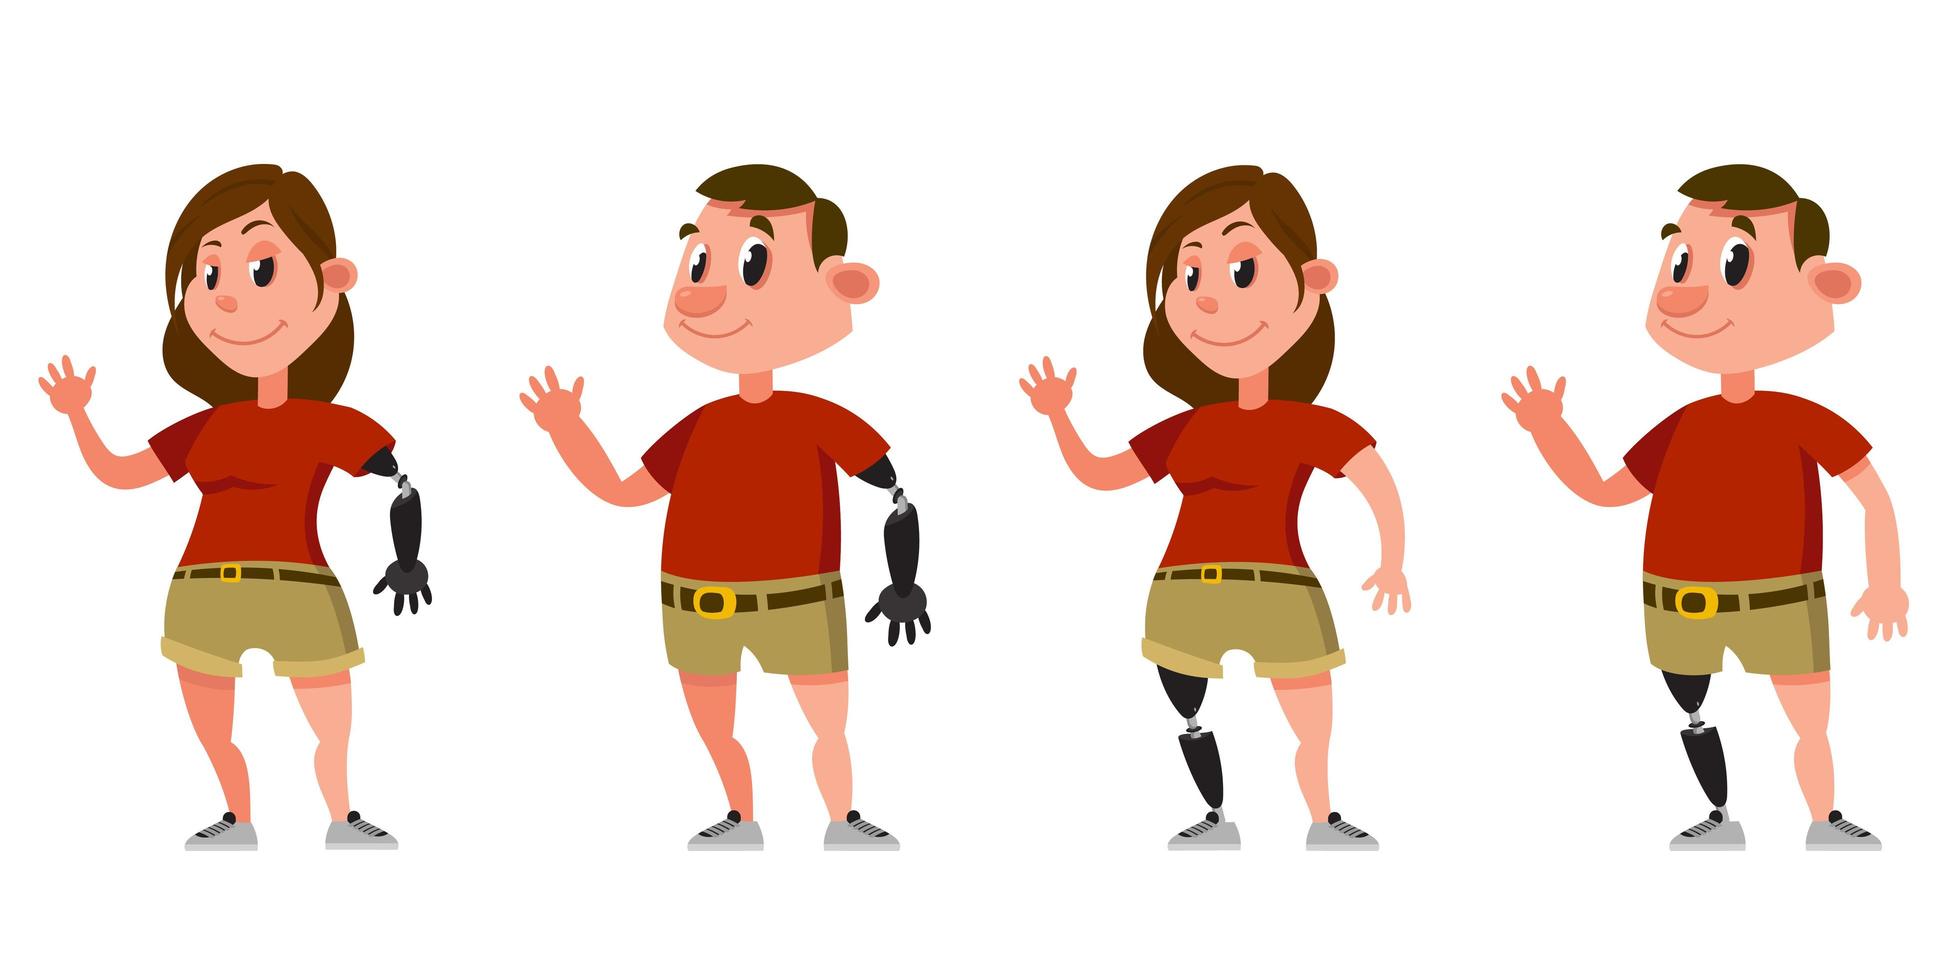 vrouw en man met prothetische armen en benen. vector